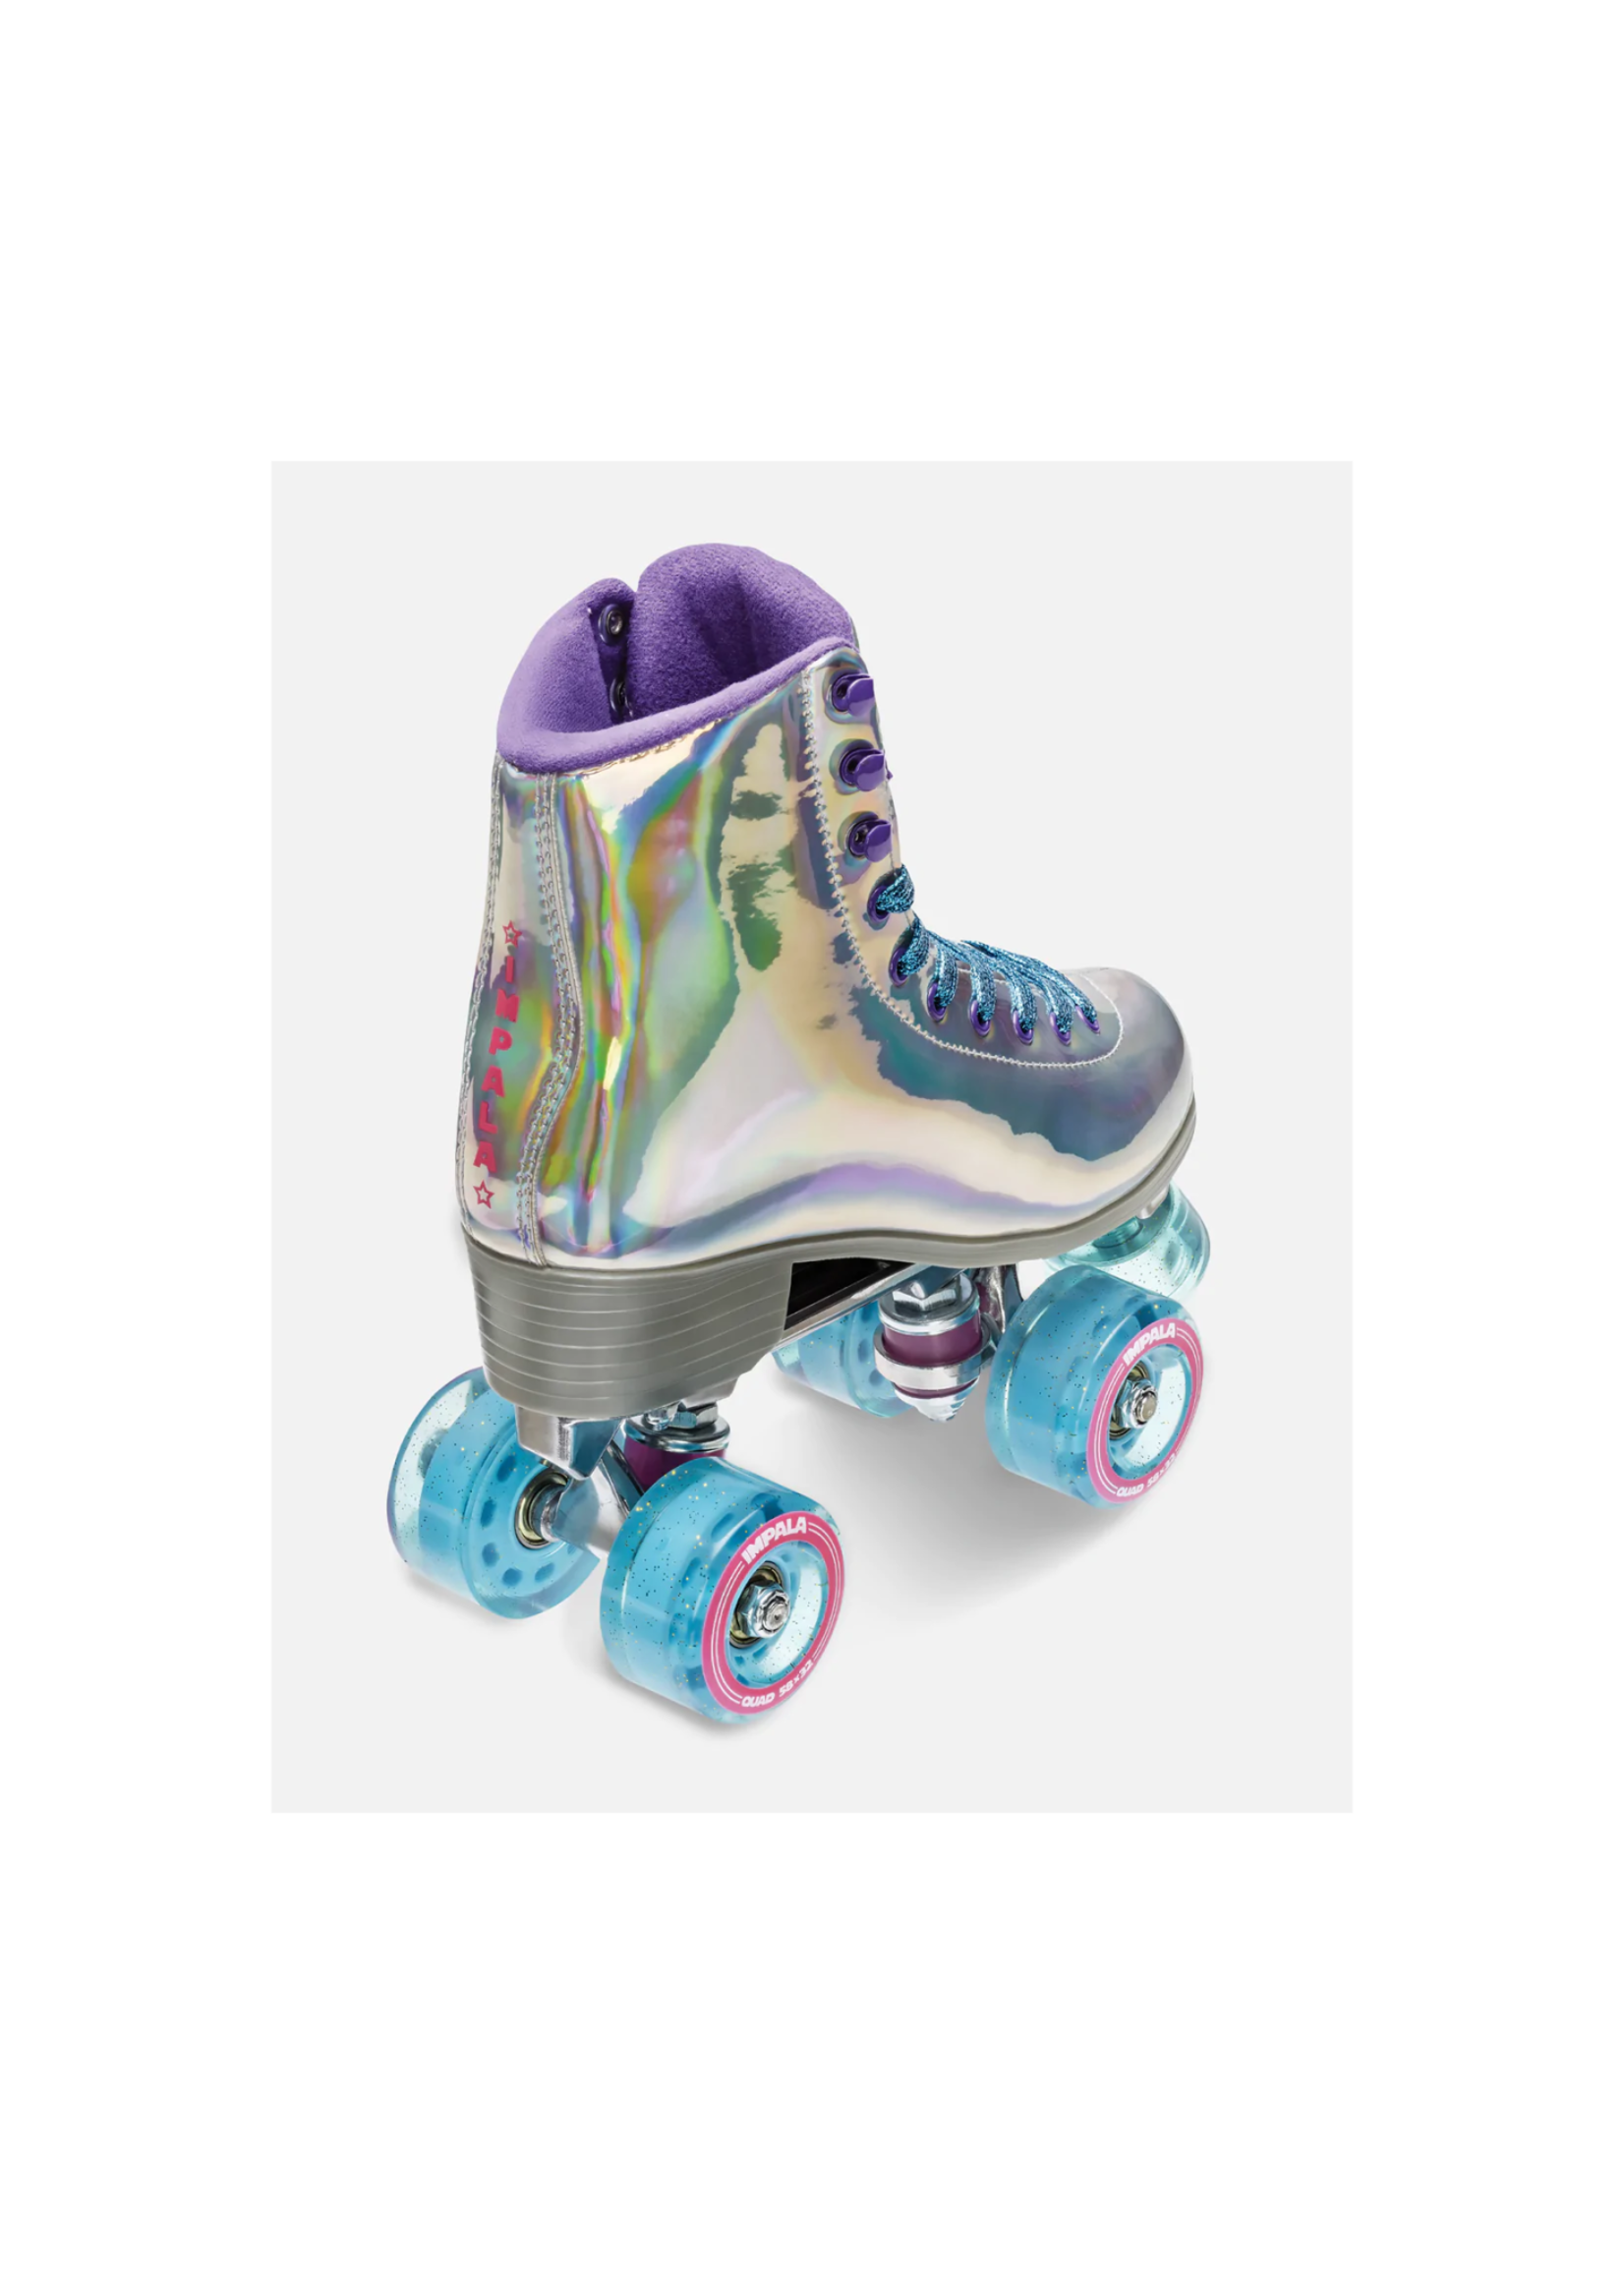 IMPALA IMPALA - Roller Skates - Holographic - 7US